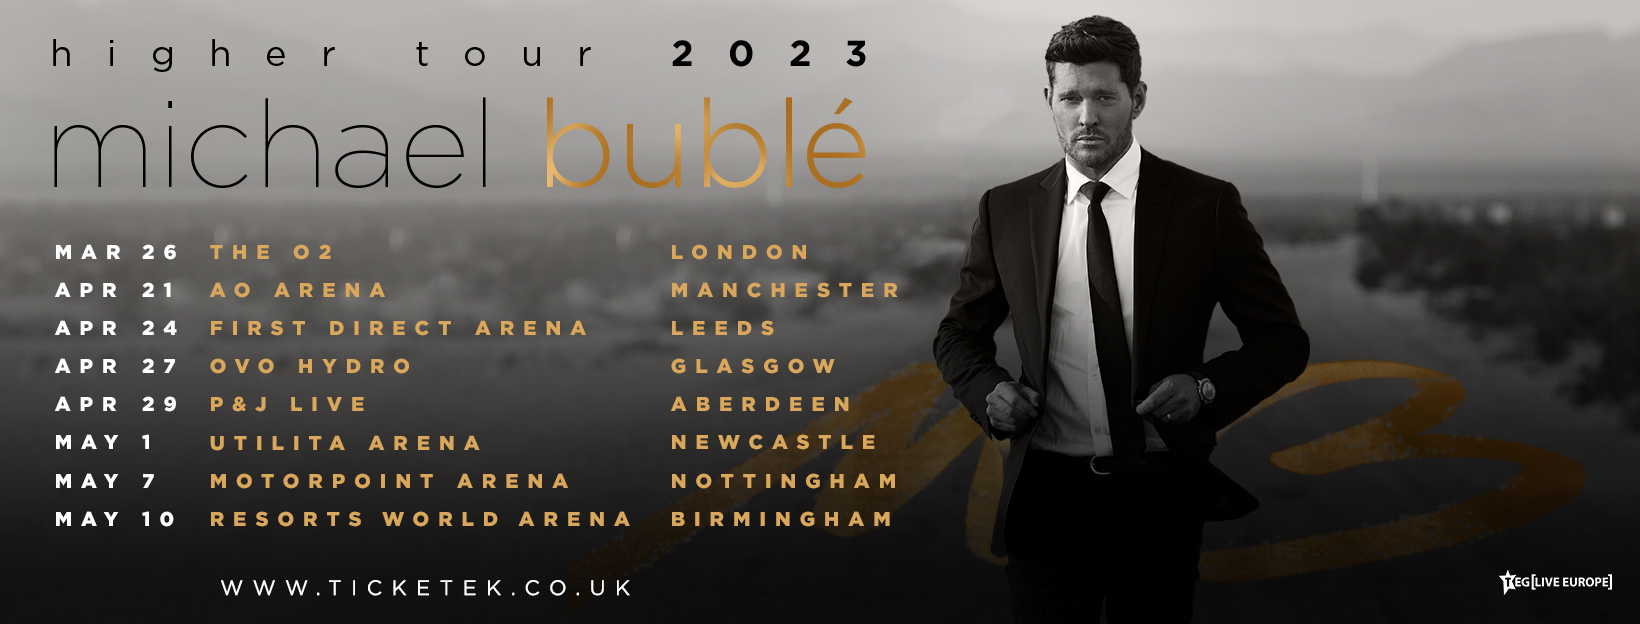 michael buble tickets 2023 tour dates